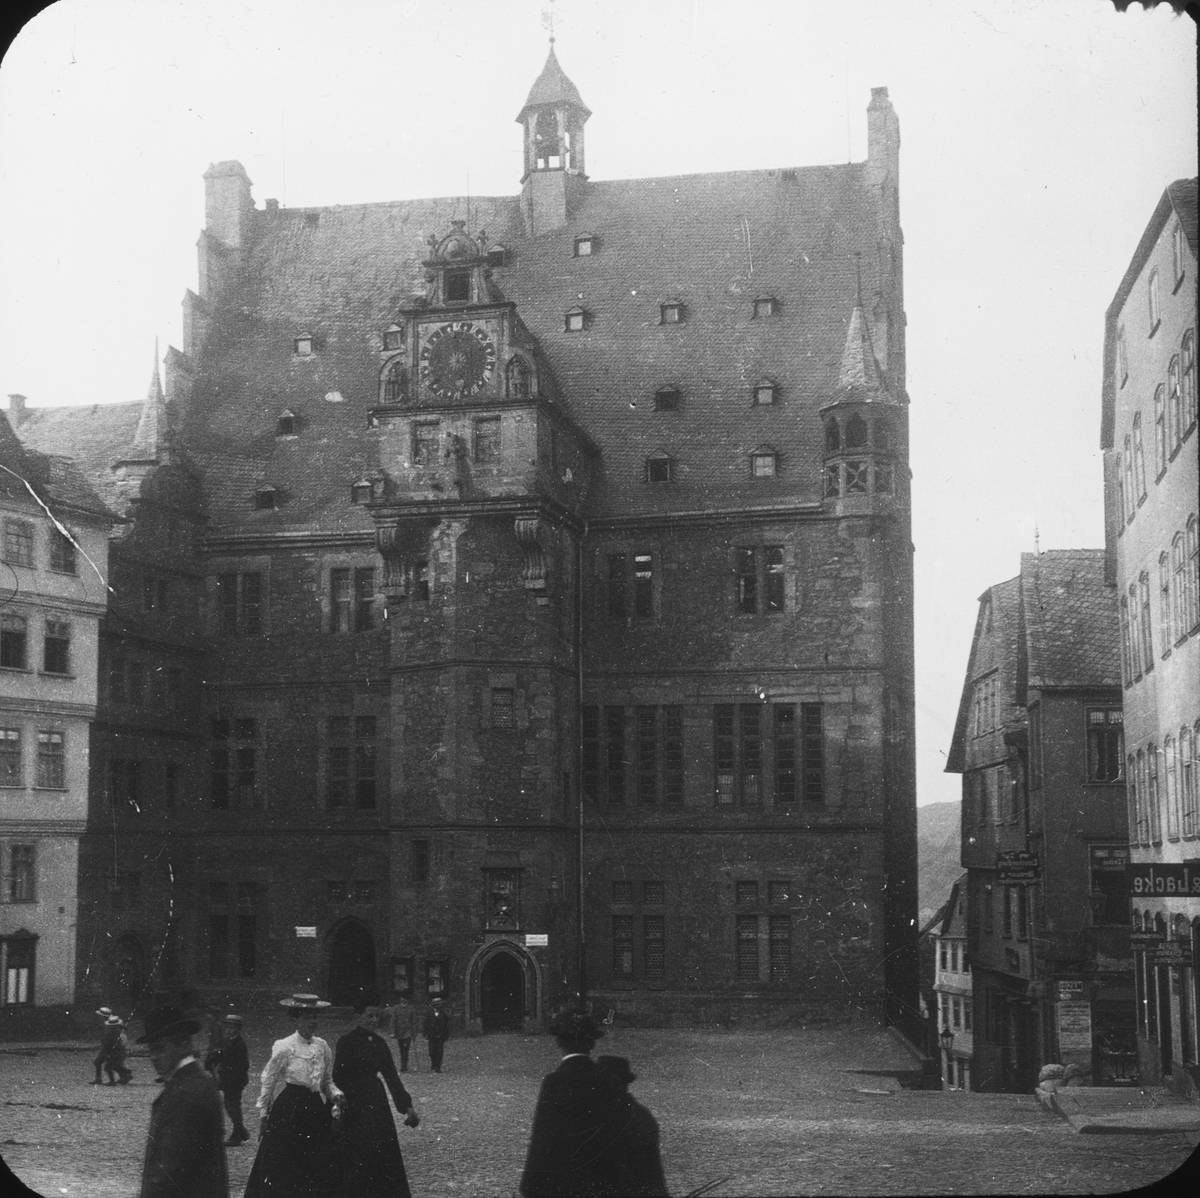 Skioptikonbild med motiv av rådhuset i Marburg.
Bilden har förvarats i kartong märkt: Resan 1904. Marburg.